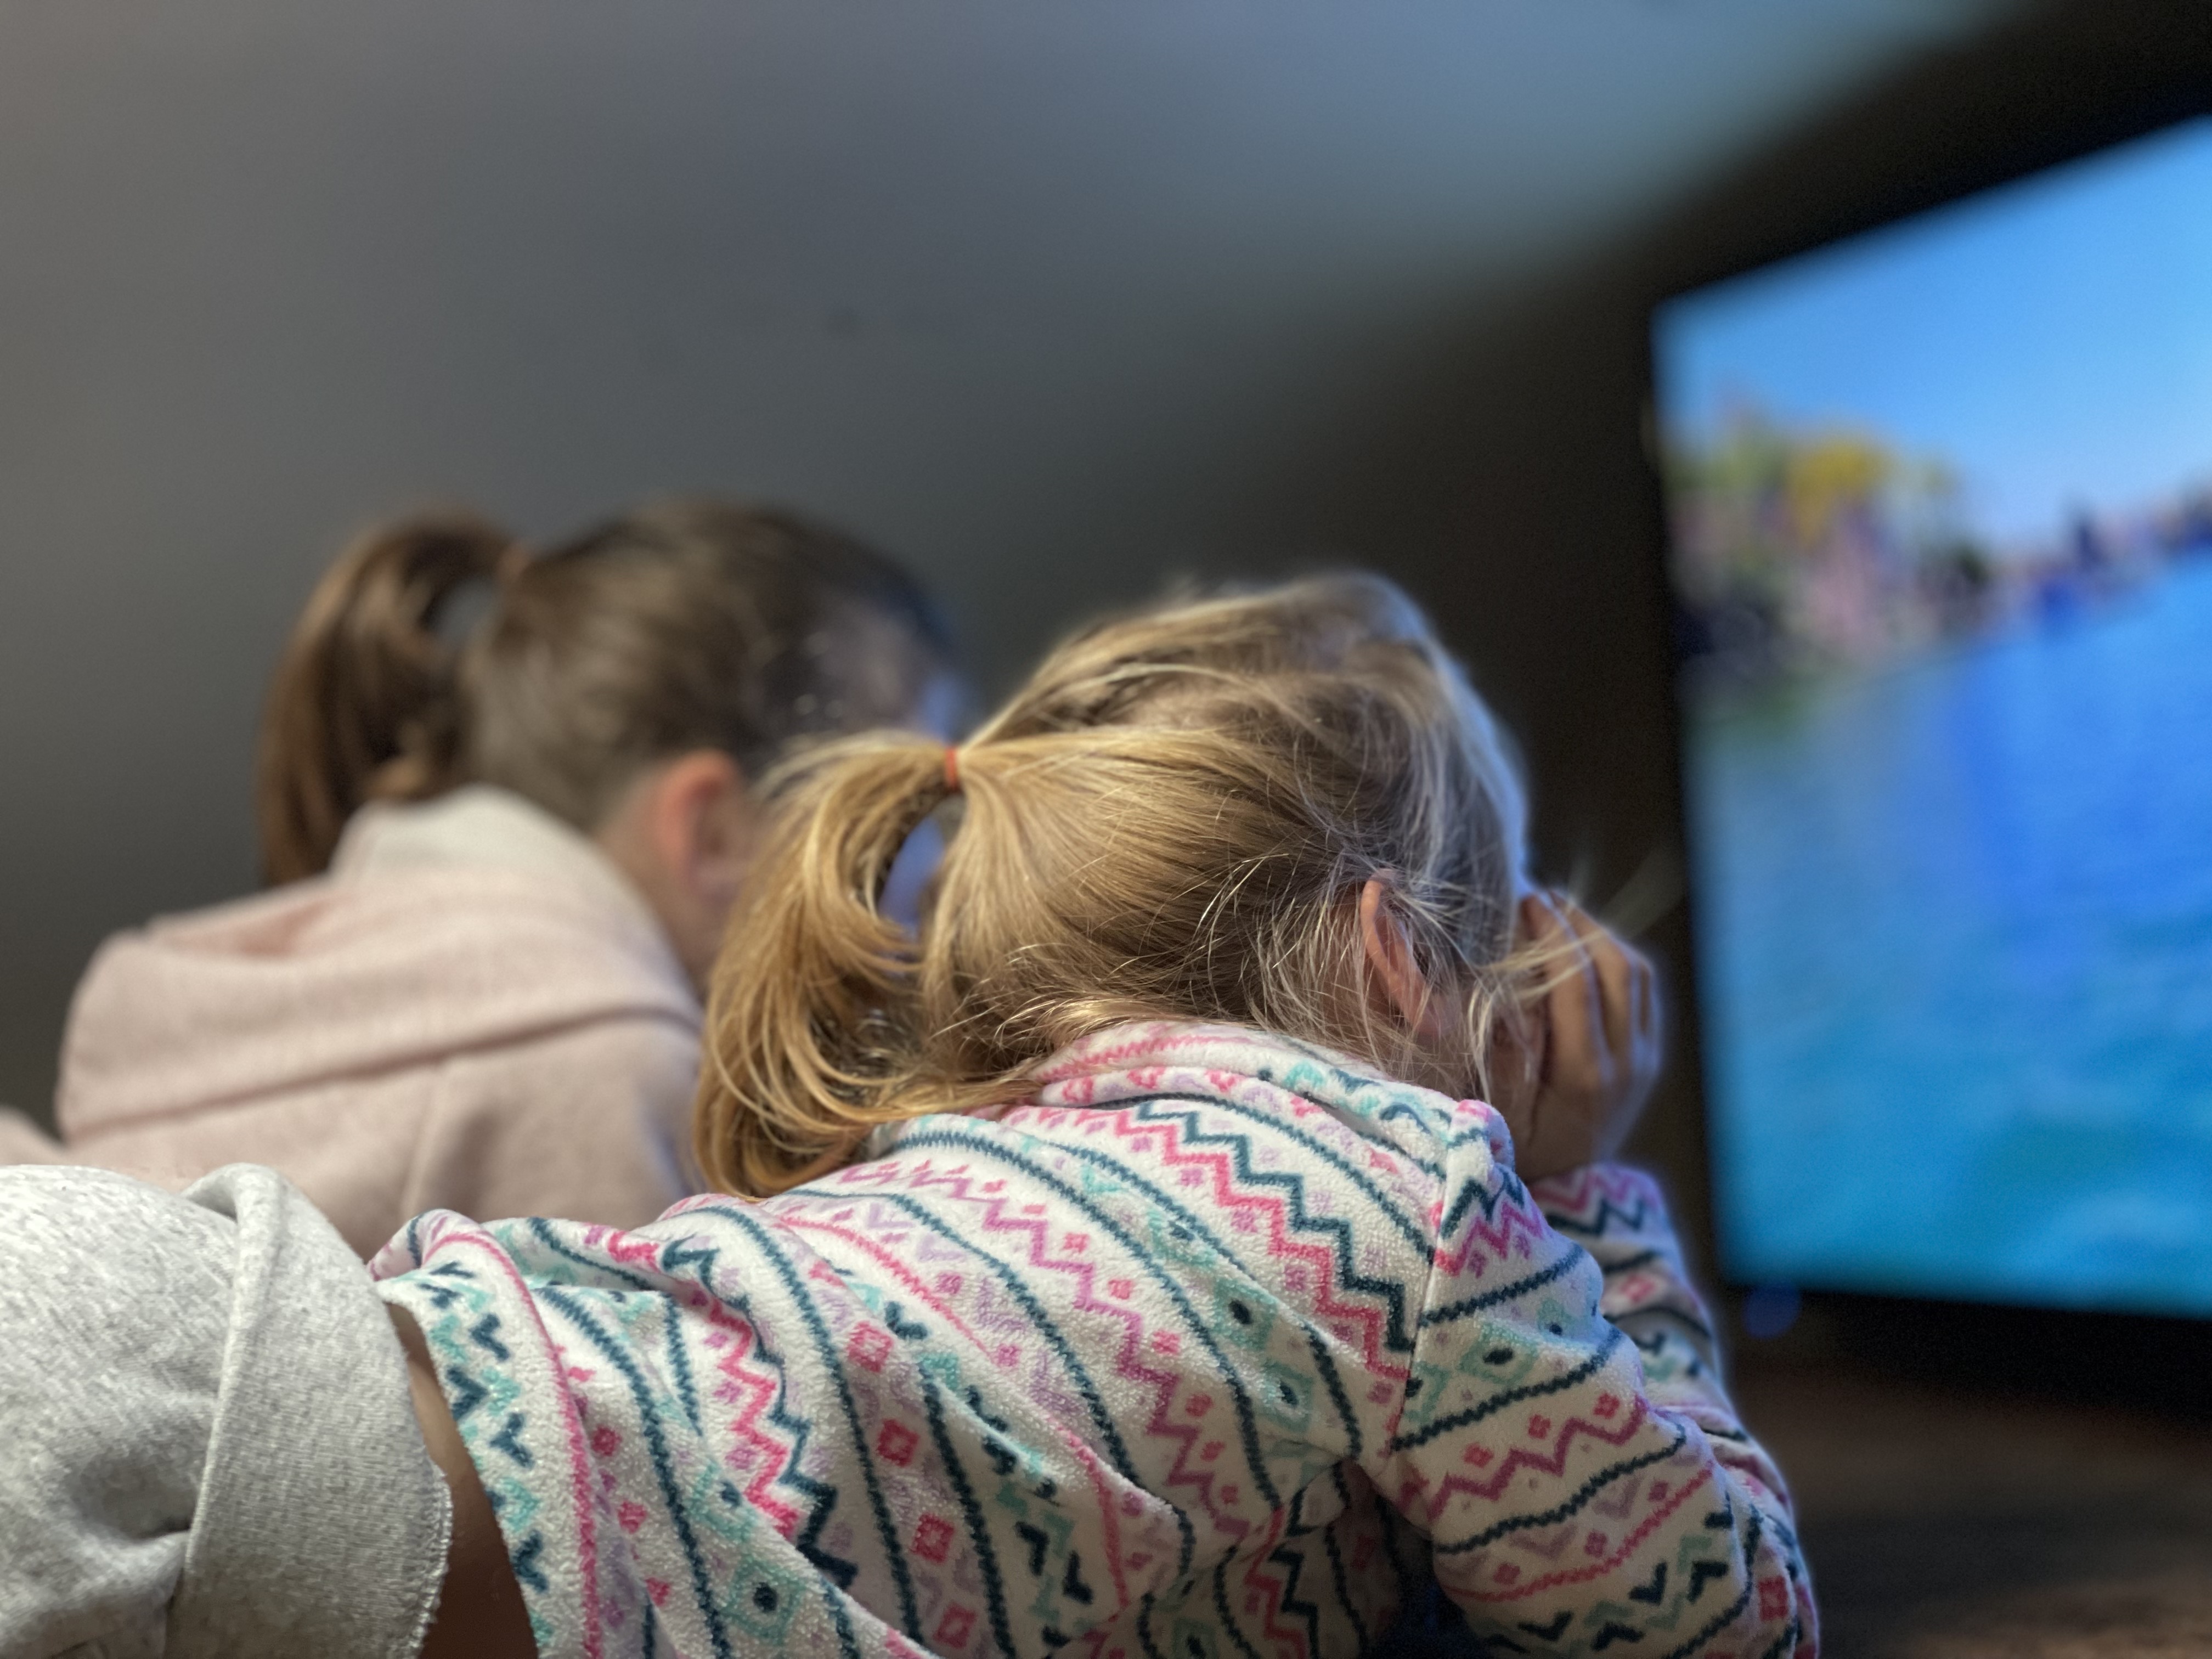 Children sit and watch TV